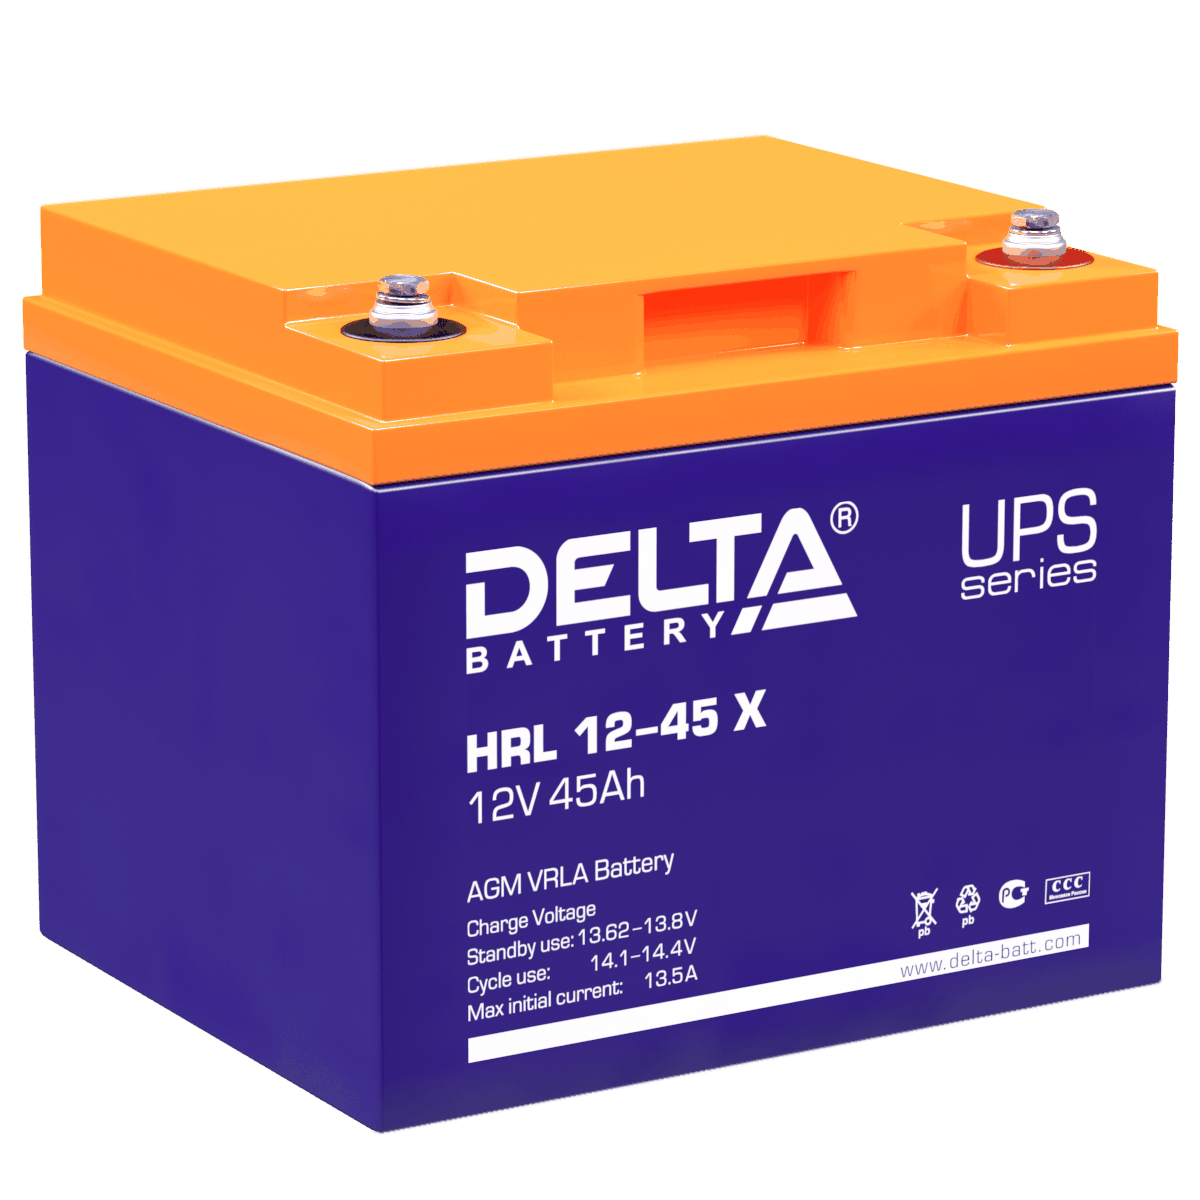 Все Батареи DELTA HRL 12-45 X видеонаблюдения в магазине Vidos Group